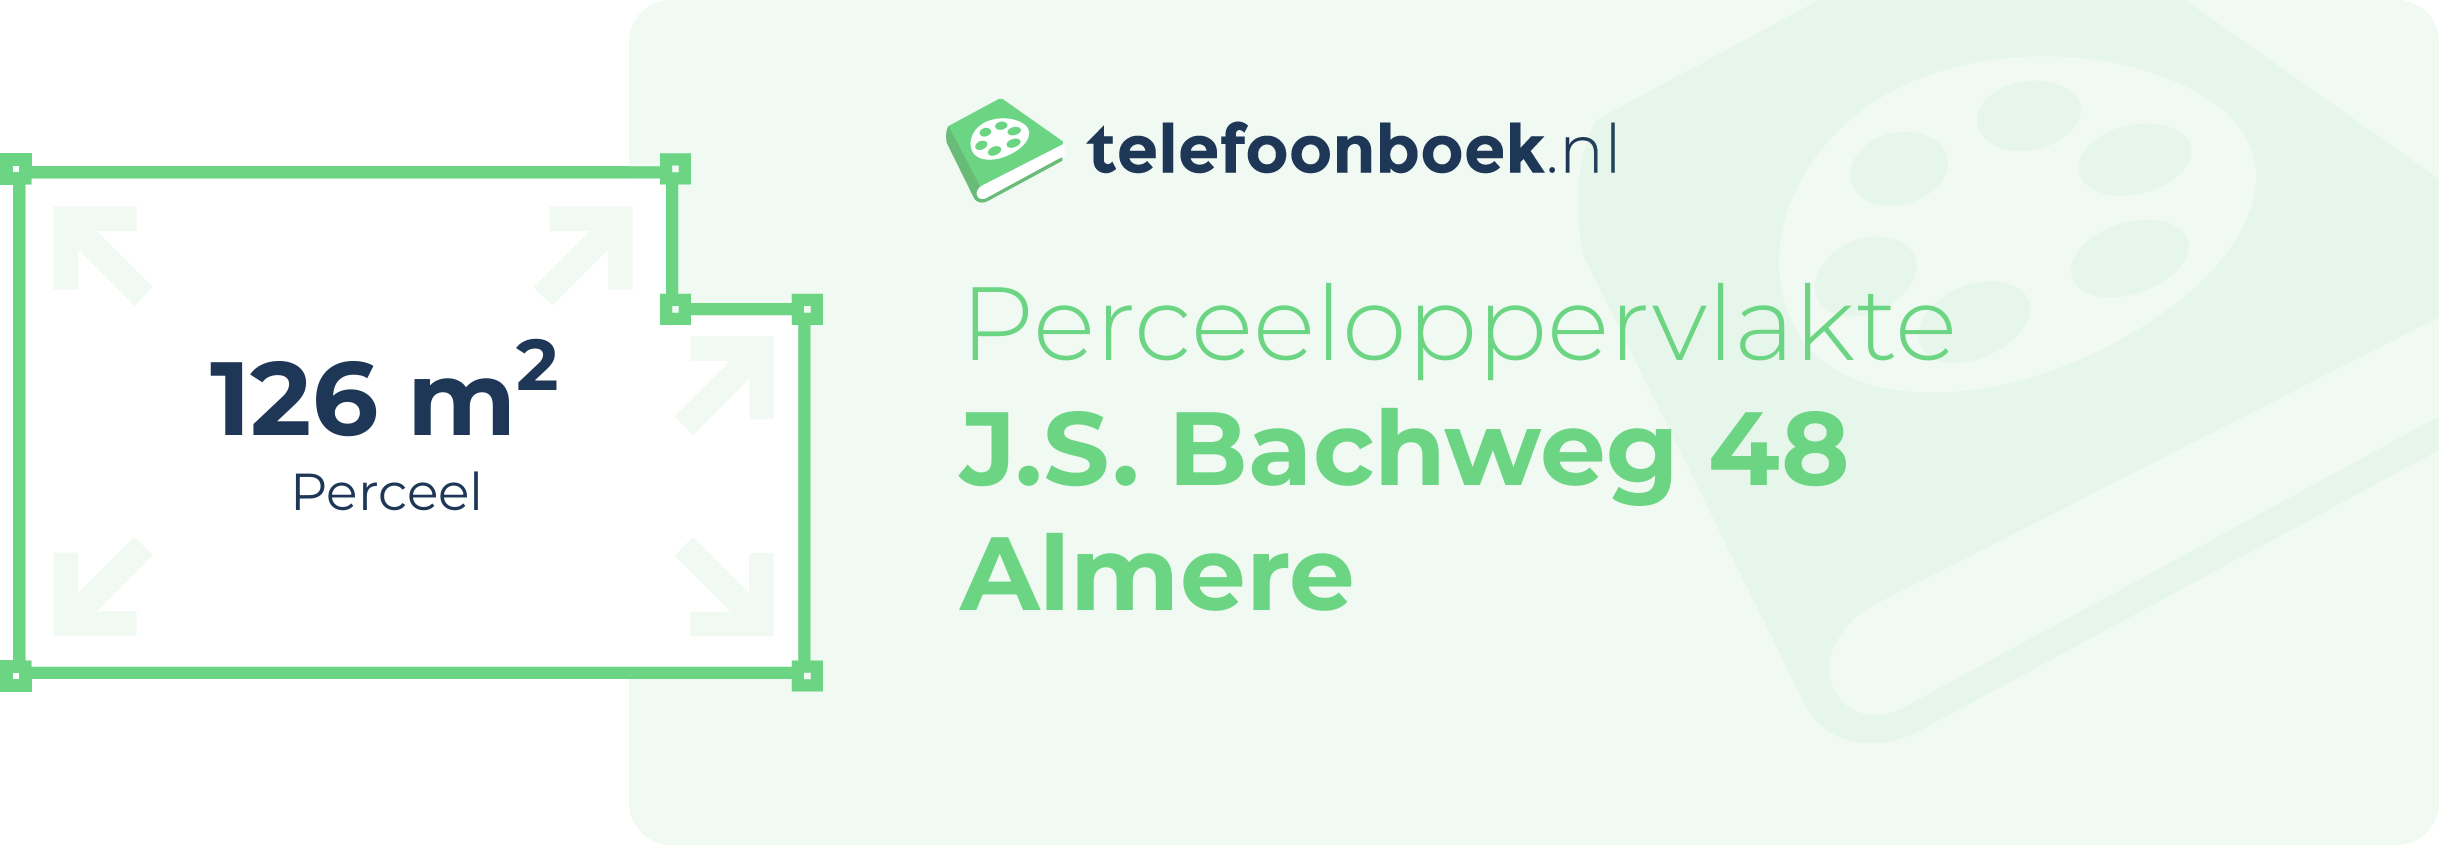 Perceeloppervlakte J.S. Bachweg 48 Almere